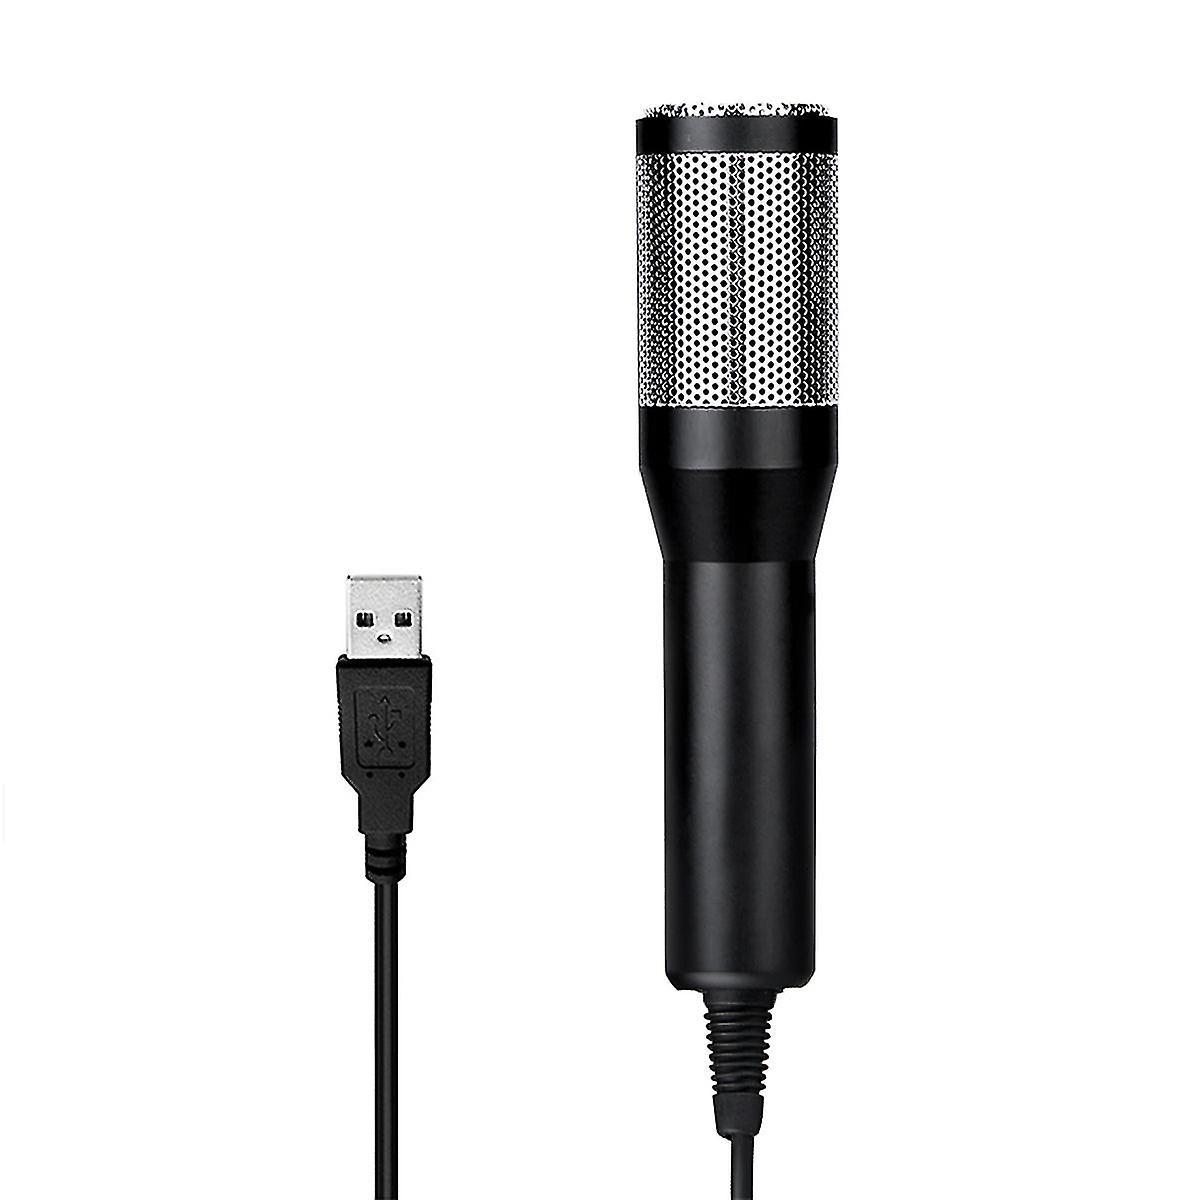 Micrô usb micrô plug-n-play micrô với chân máy lọc chân đế cho máy tính hát podcasting